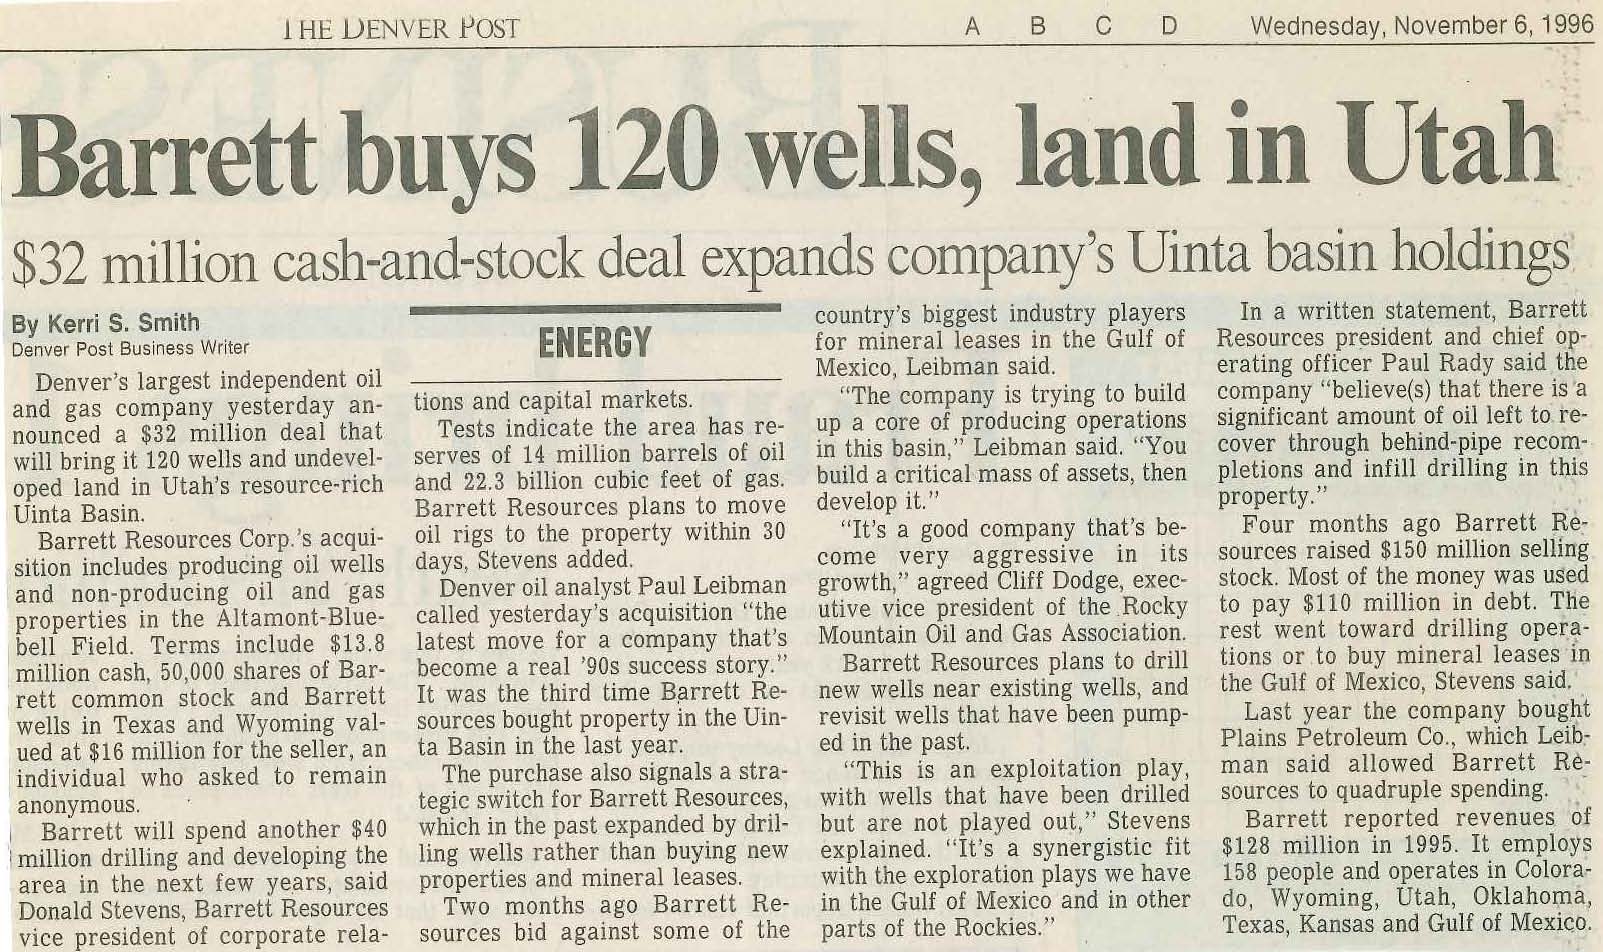 Source: The Denver Post, November 2, 1996